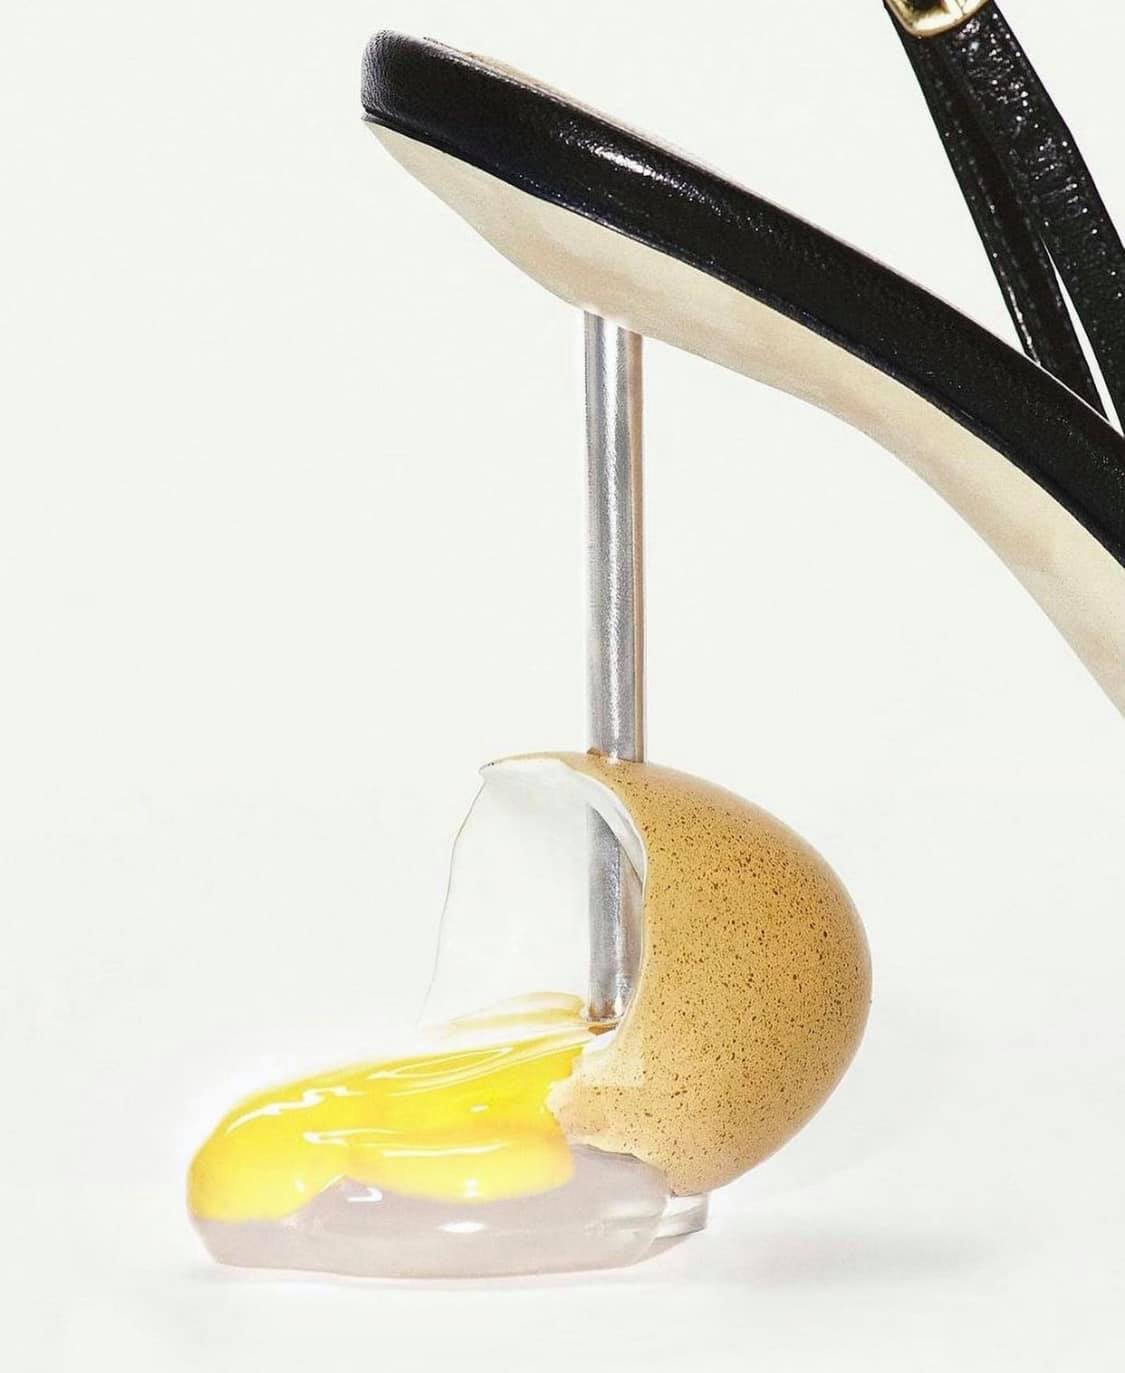 Một hình ảnh độc đáo khác với trái trứng gà bị vỡ trên gót giày.